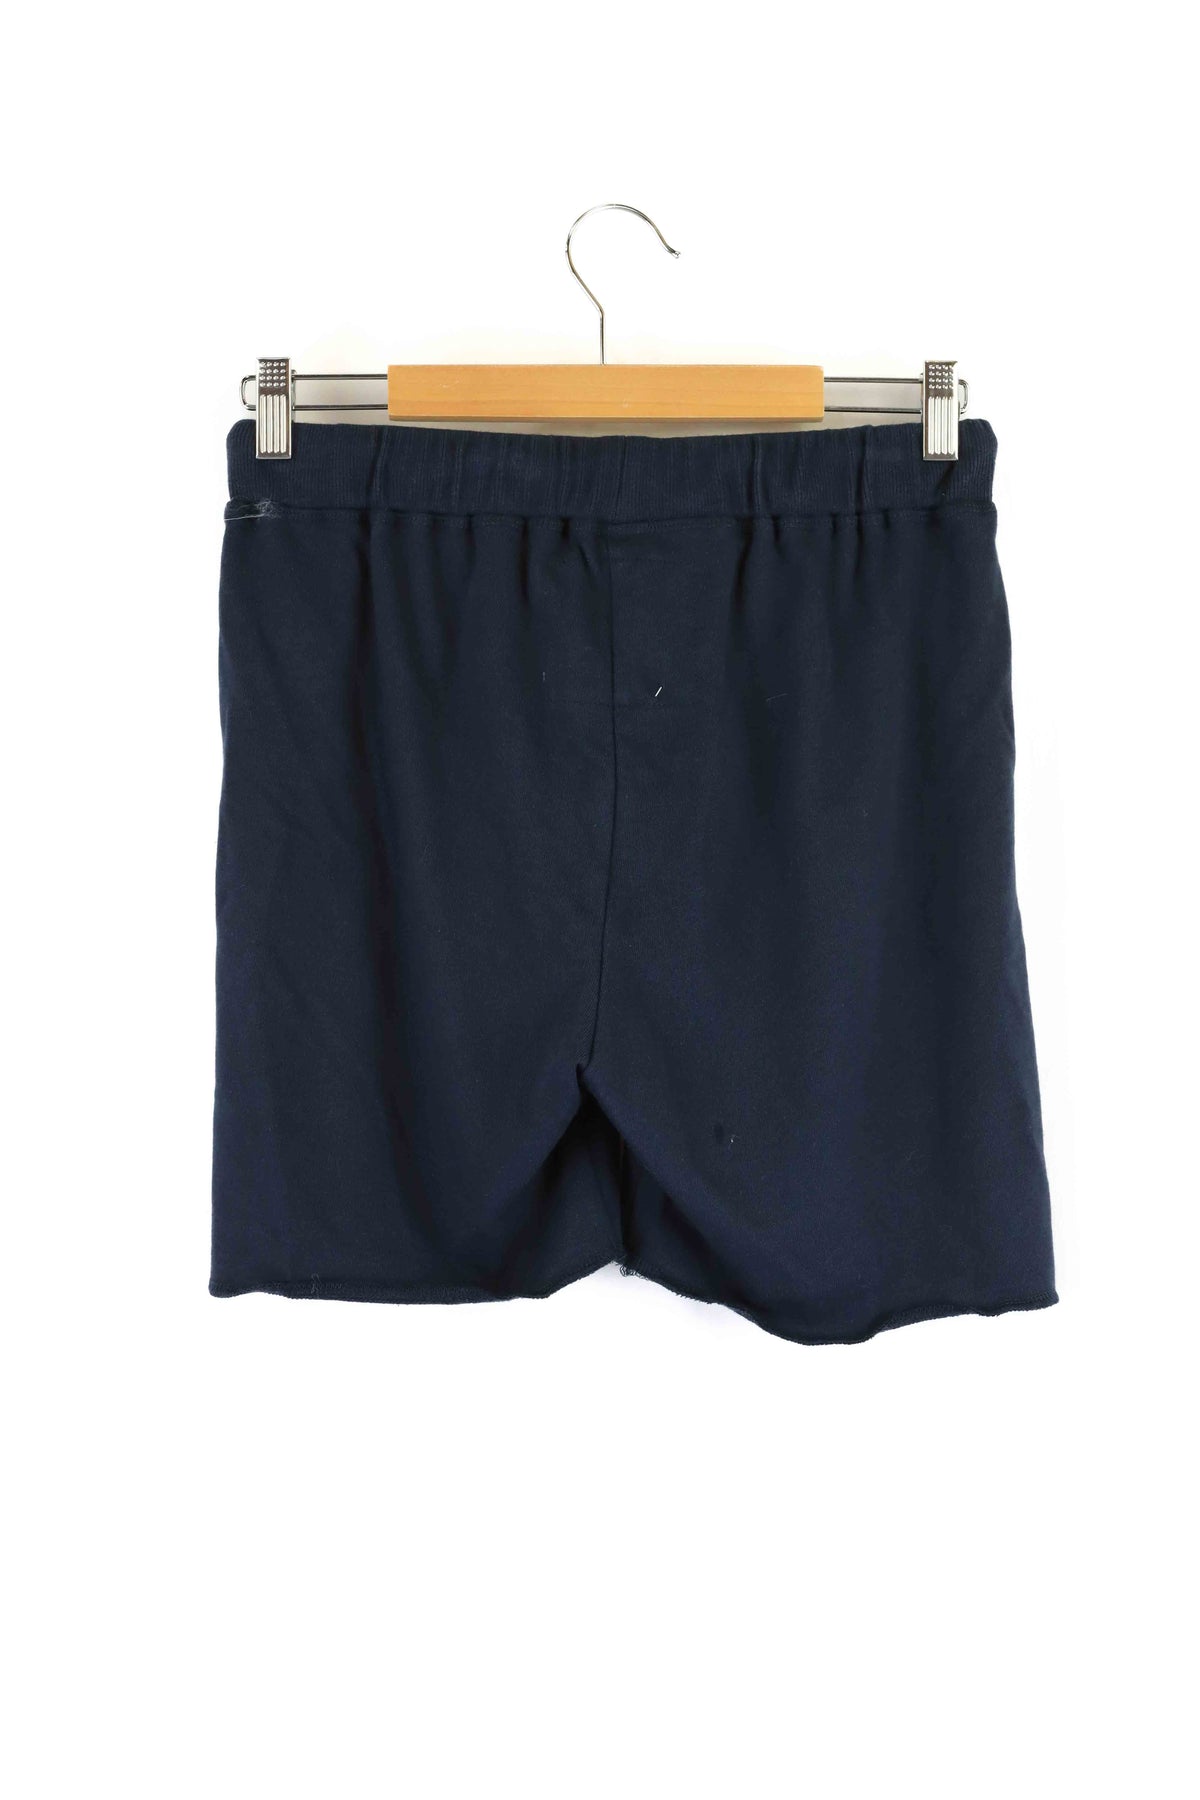 Hammill &amp; Co Blue Shorts S